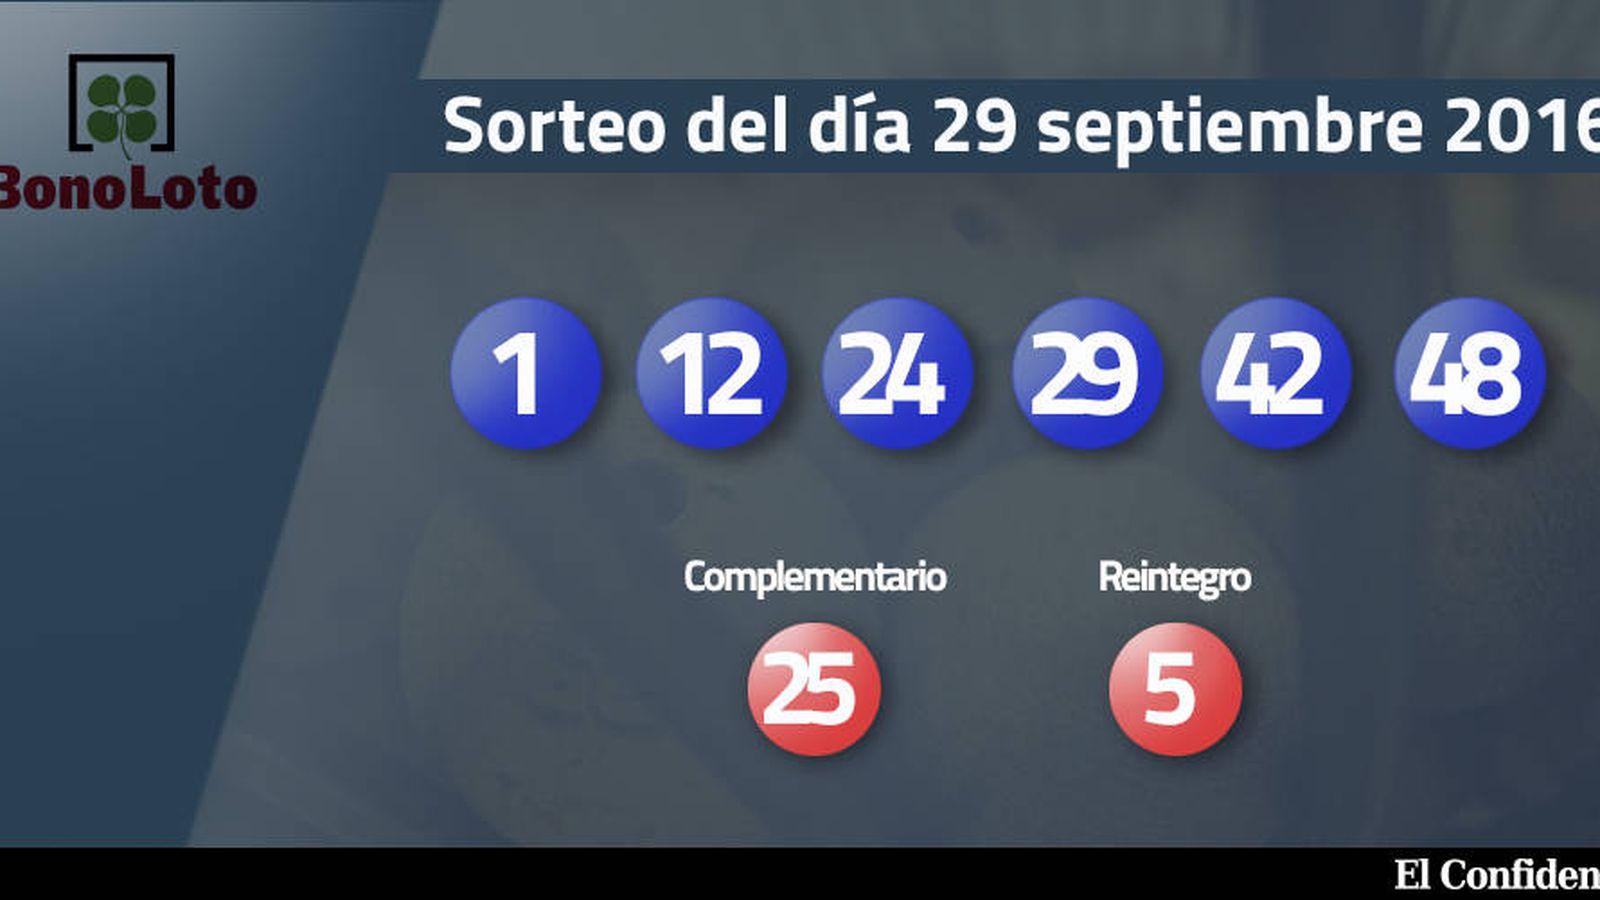 Foto: Resultados del sorteo de la Bonoloto del 29 septiembre 2016 (EC)